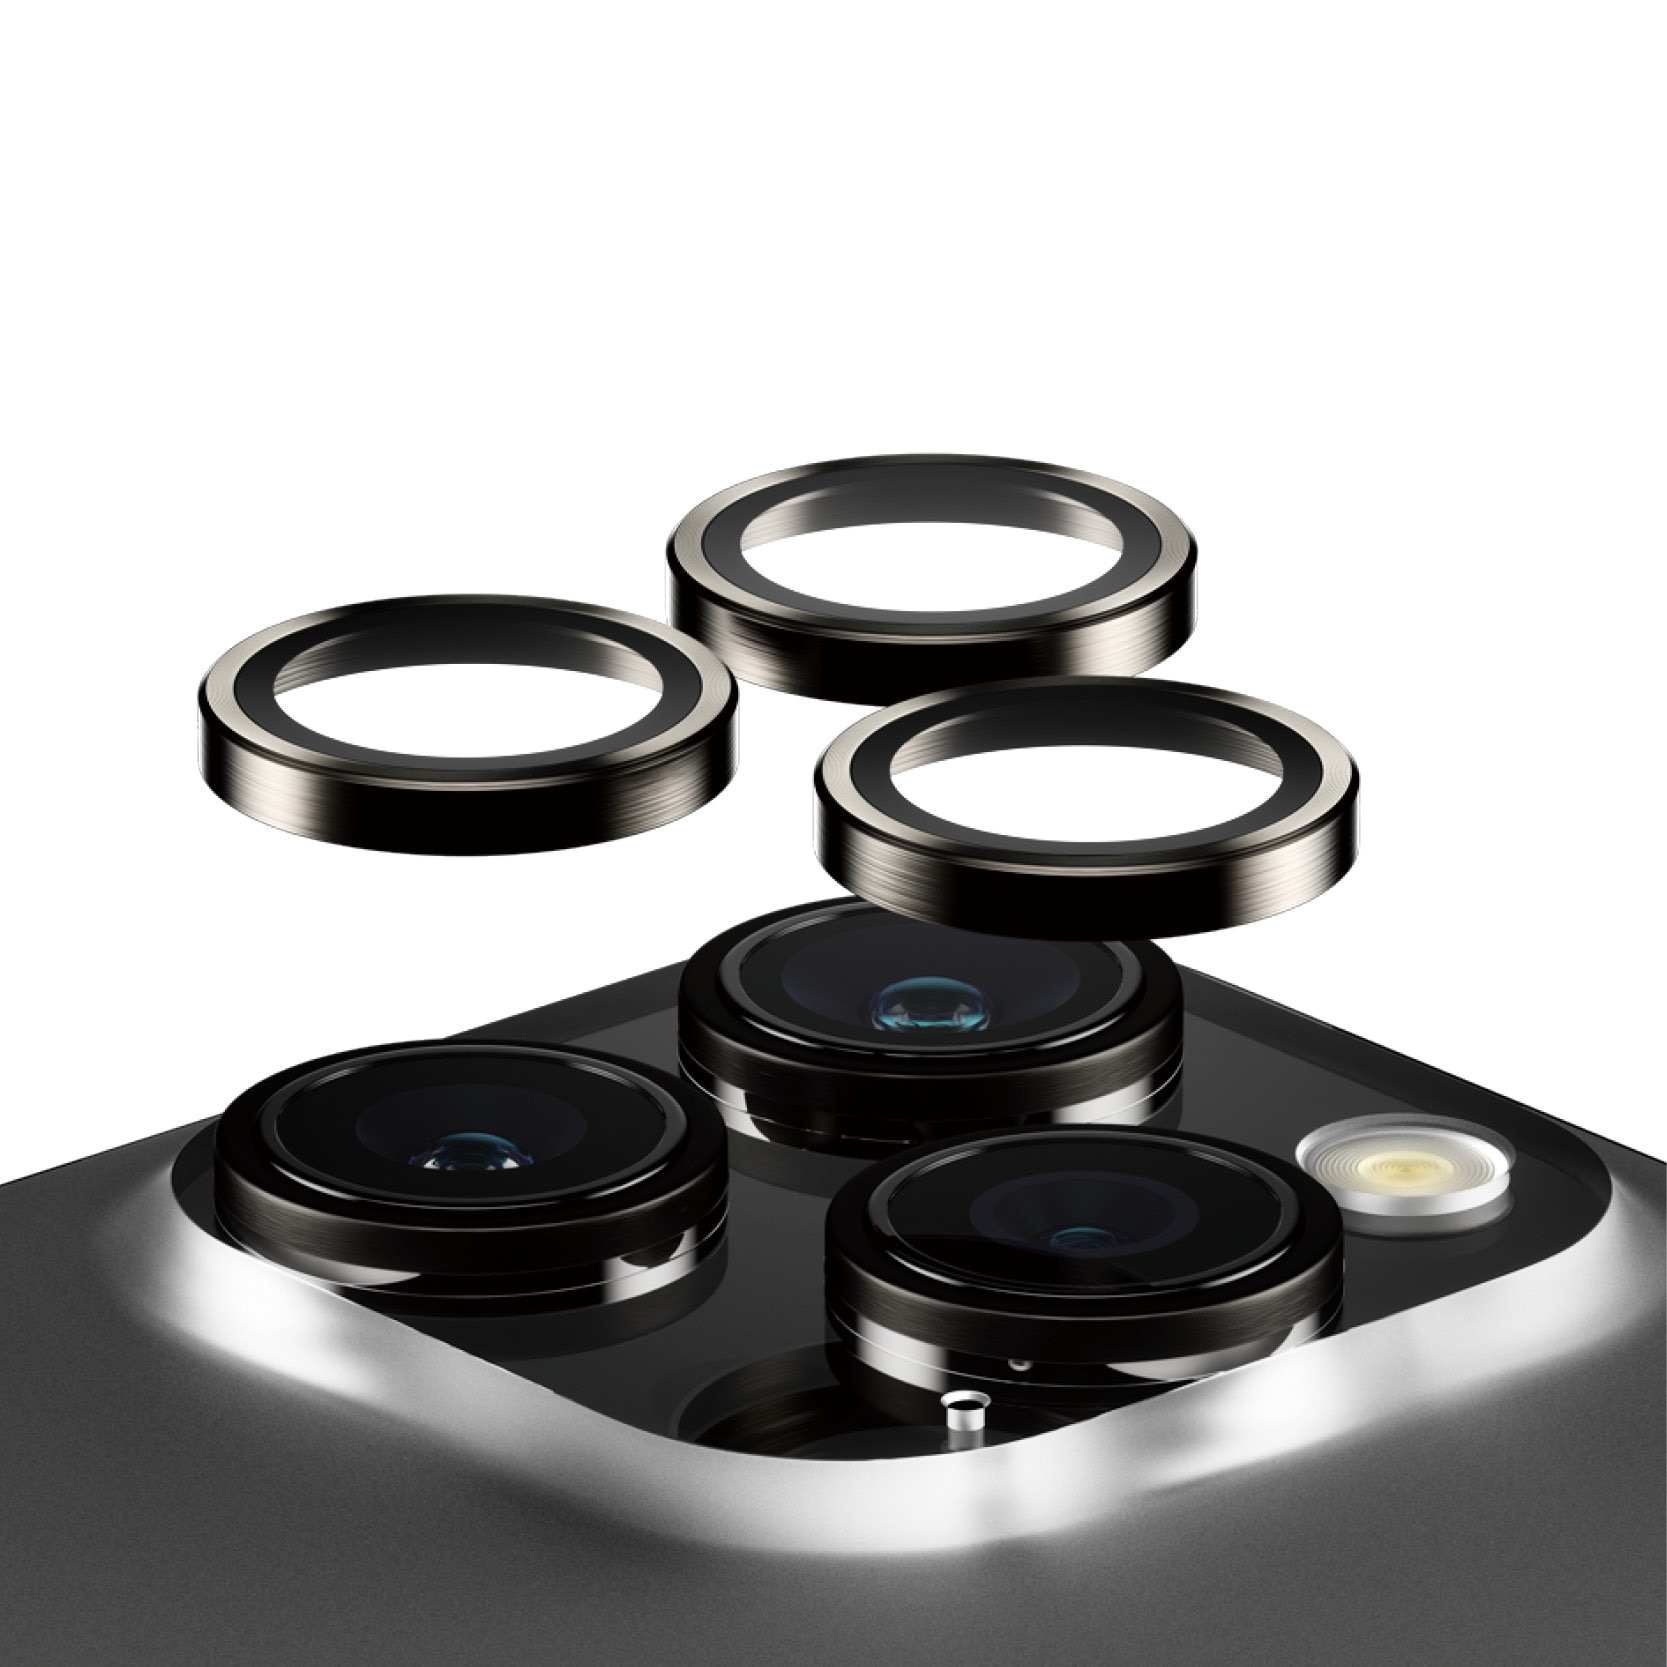 iPhone 15 Pro Hoops linsskydd med aluminiumram, svart